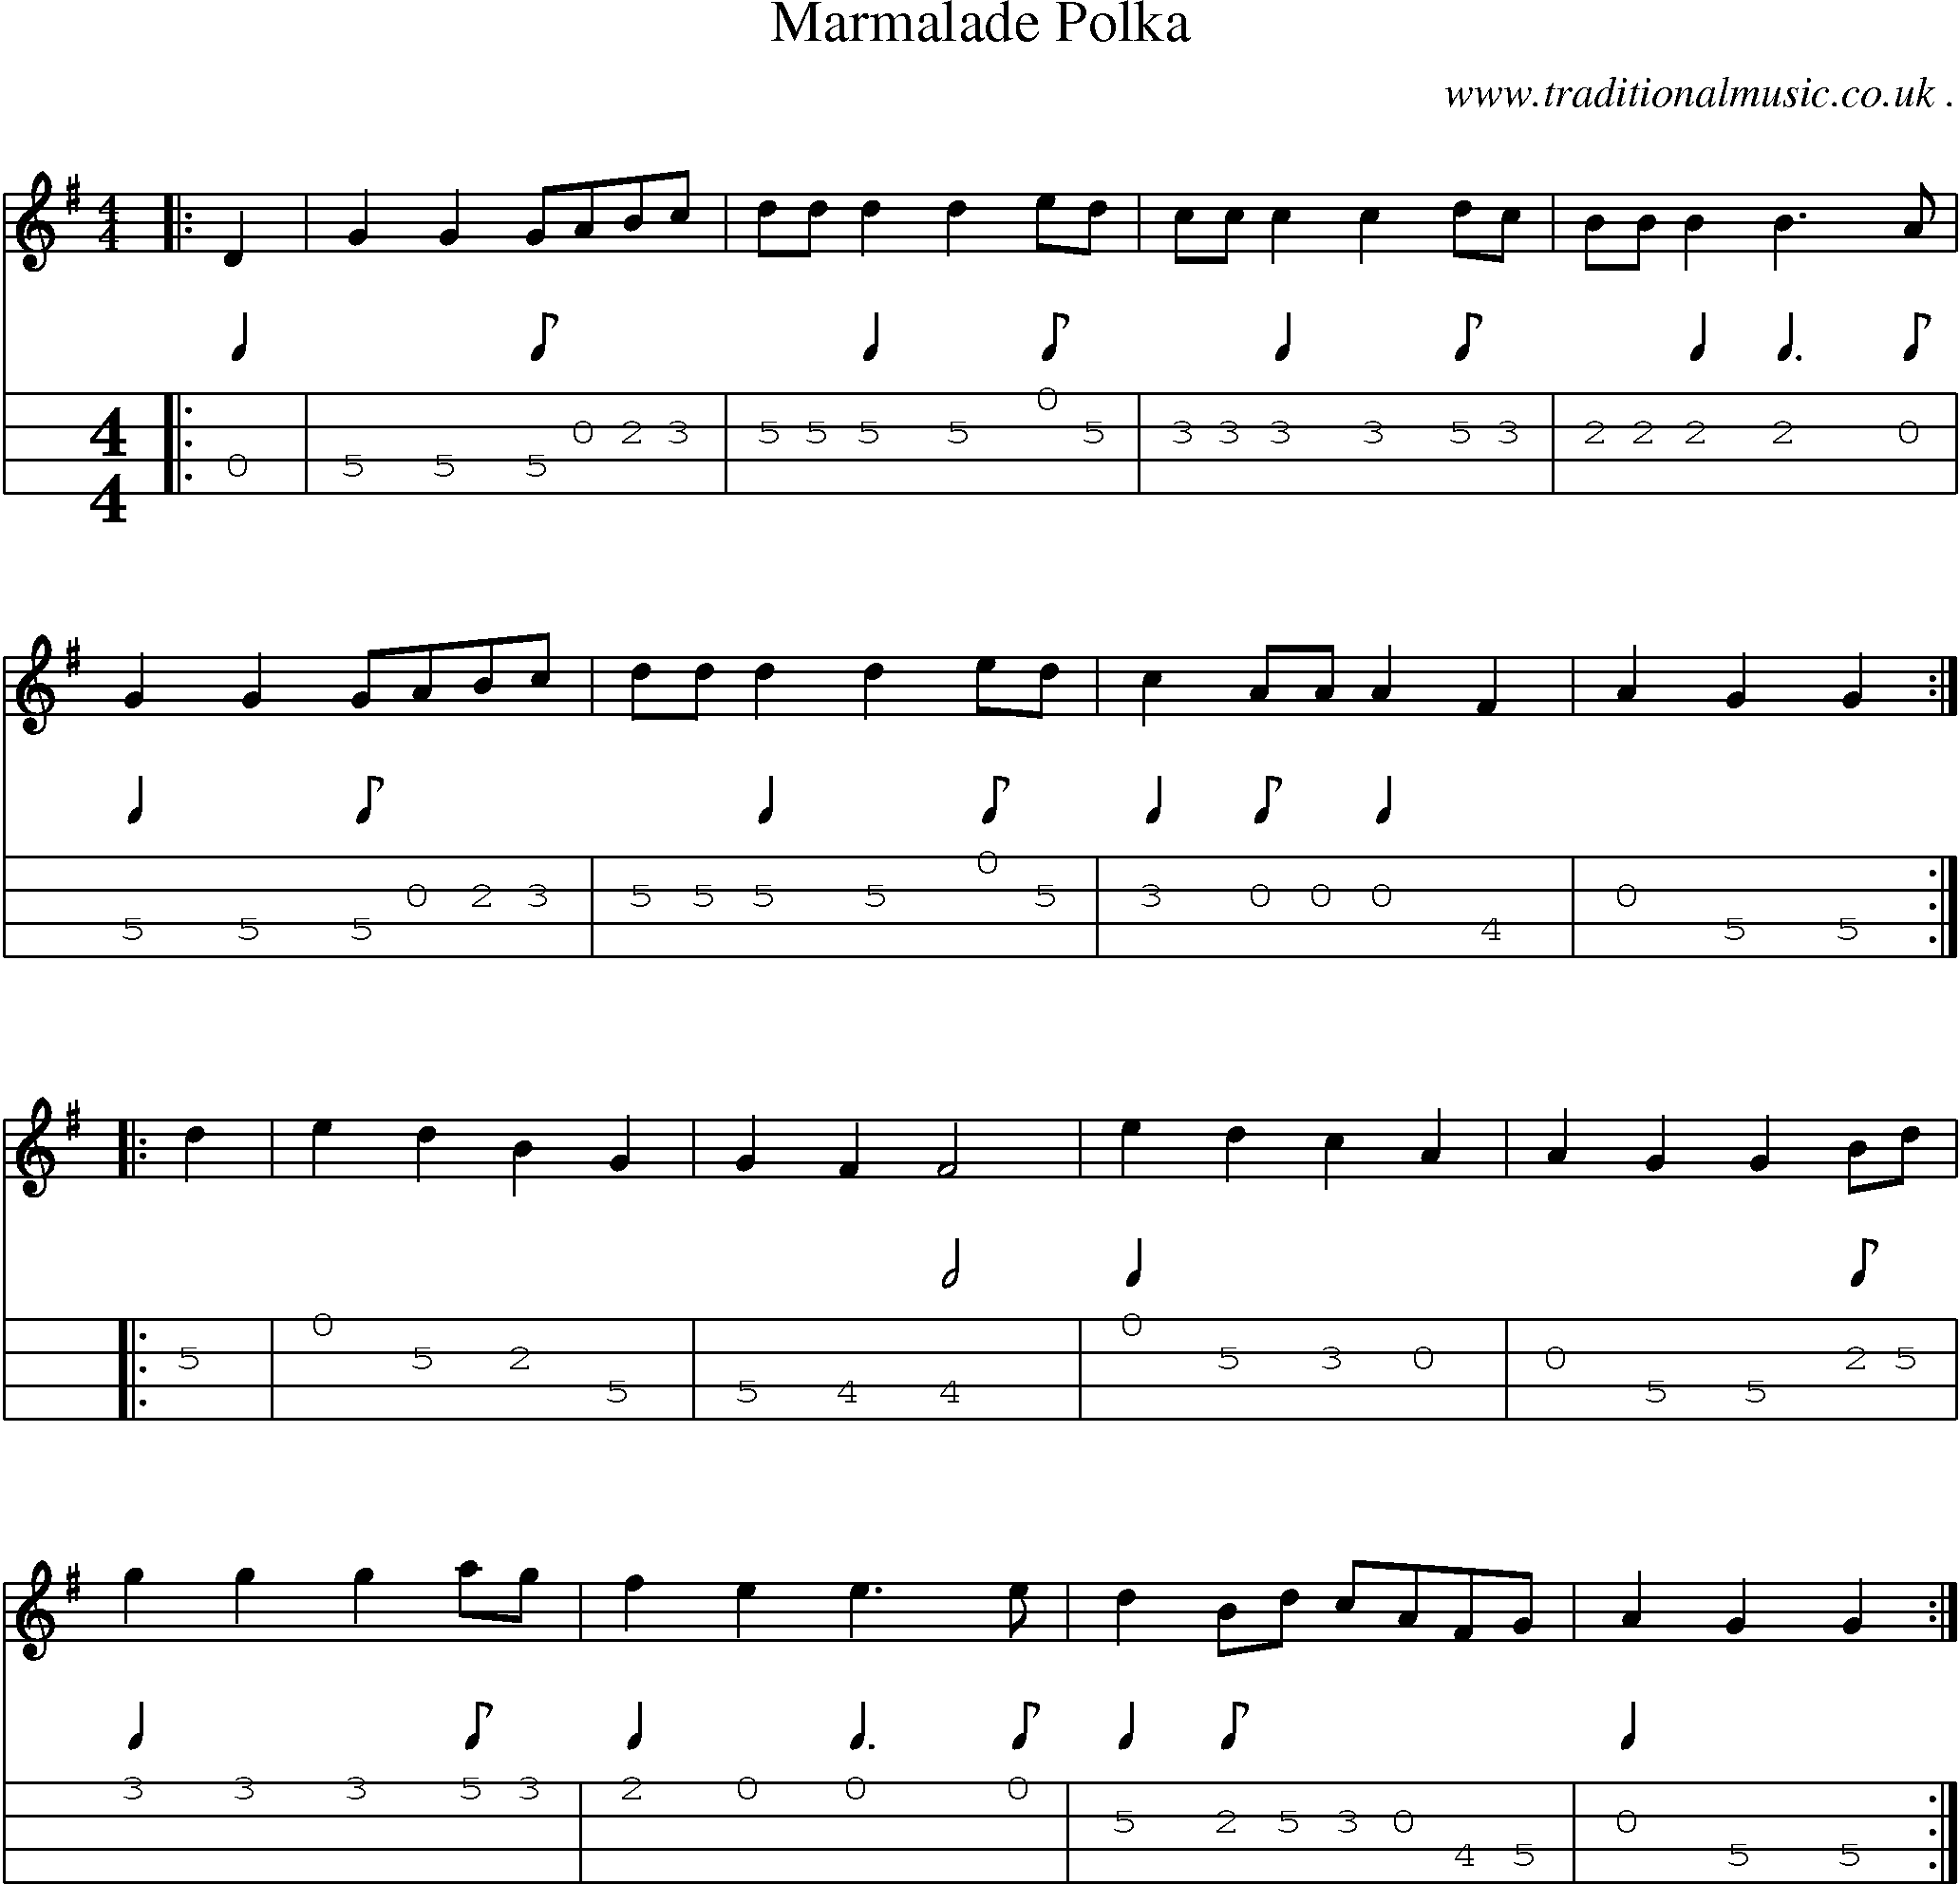 Sheet-Music and Mandolin Tabs for Marmalade Polka